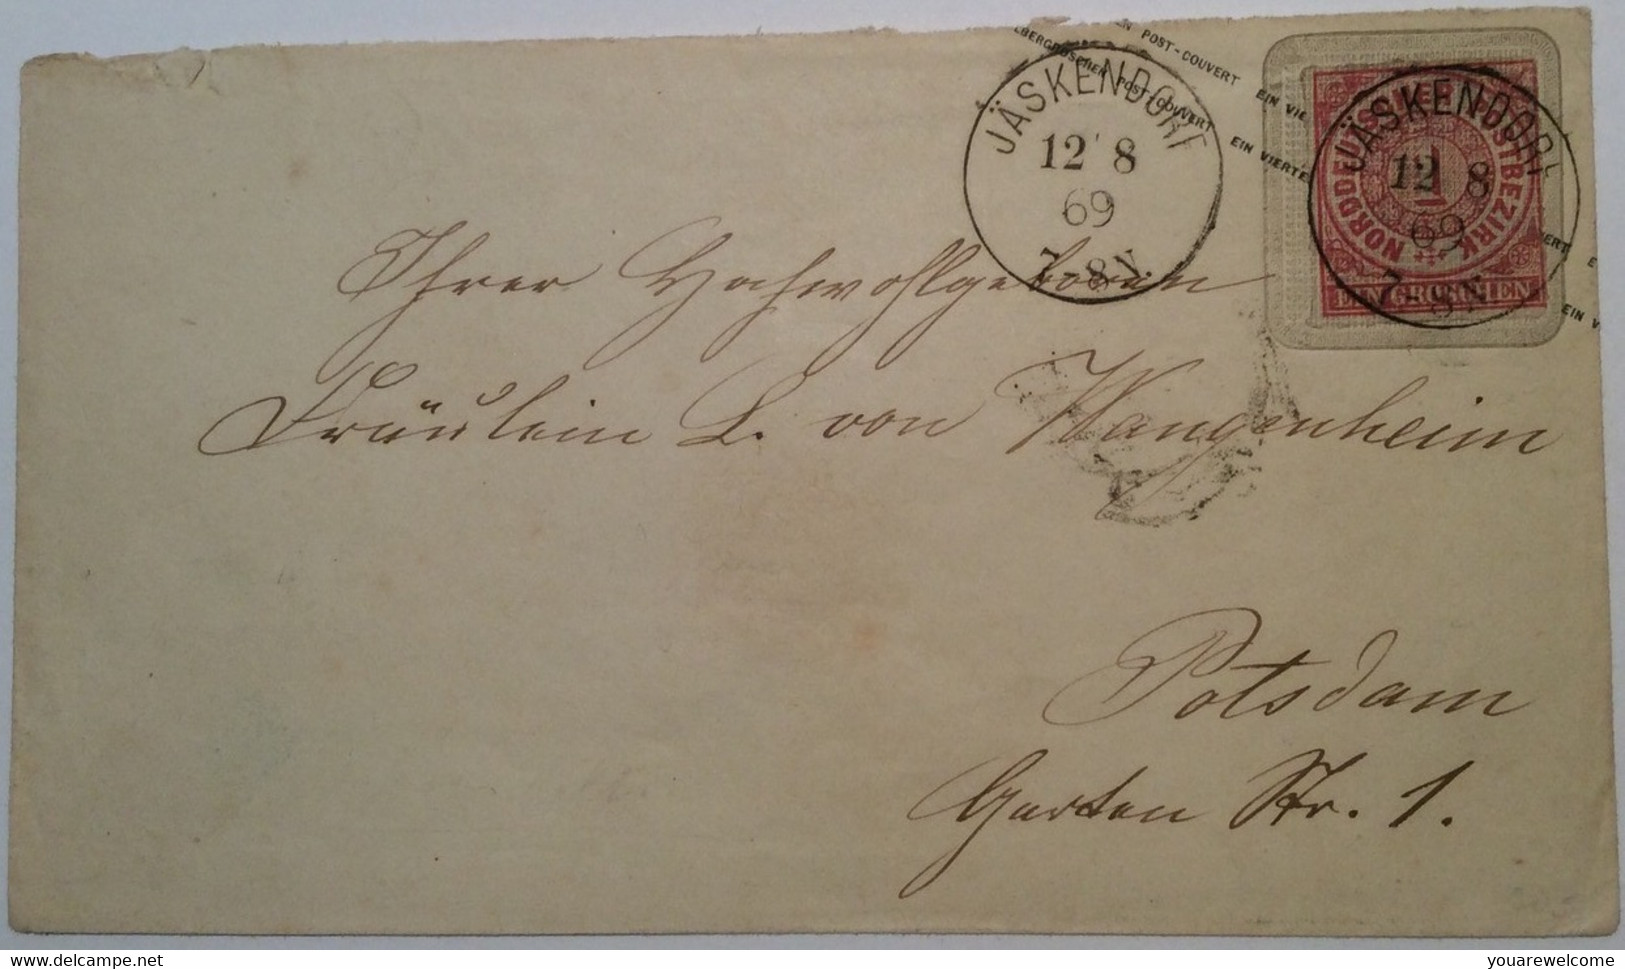 NDP 1868: 1 Gr Ganzsache Brief Preußen 6 Pfg JÄSKENDORF STPL RR !  (Polen Mohrungen Königsberg Poland Cover - Entiers Postaux